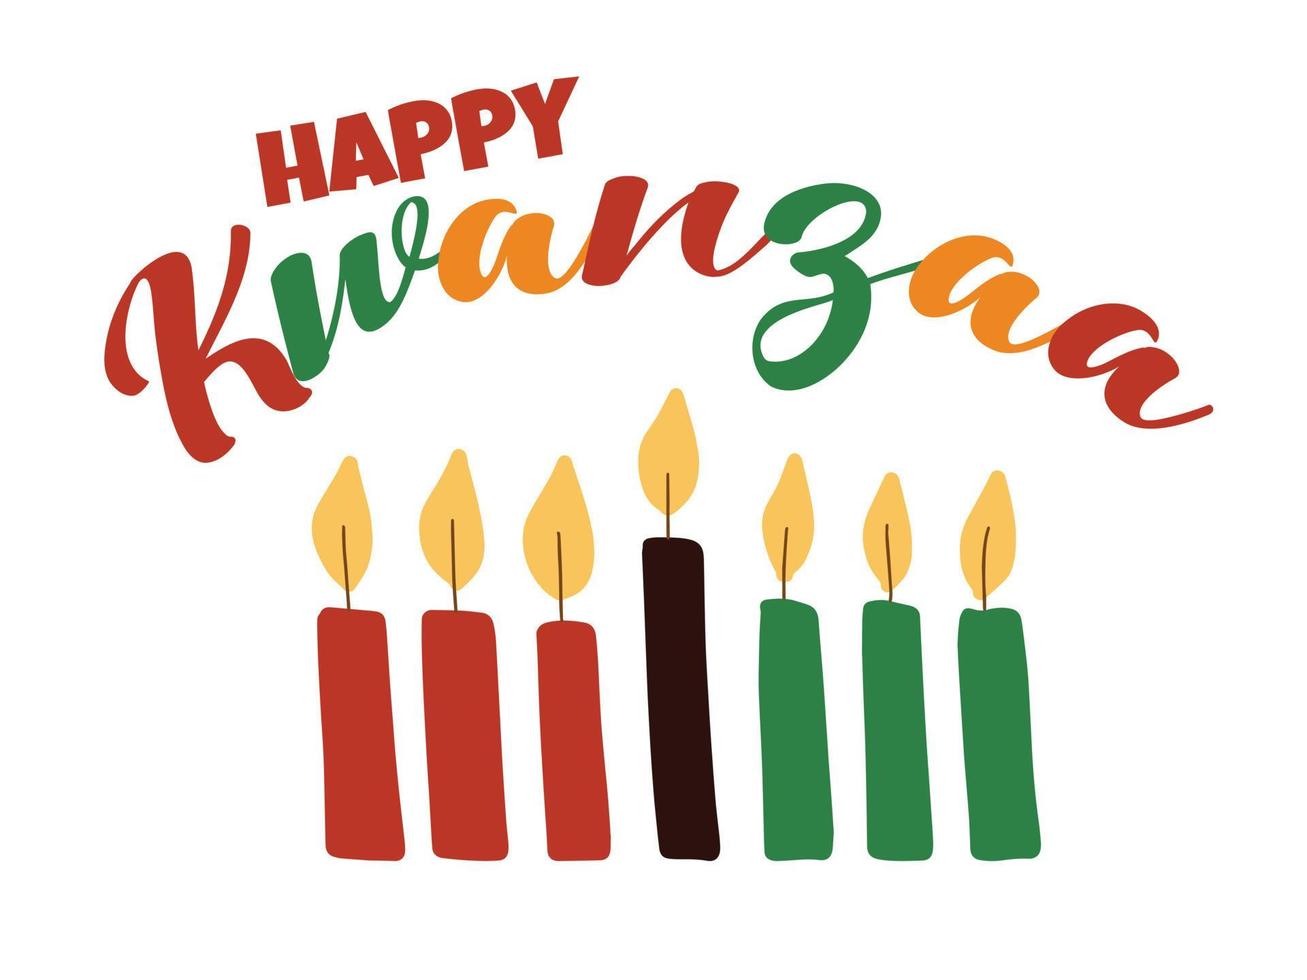 happy kwanzaa - banner met kleurrijke scriptletters en met de hand getekende eenvoudige kinara-kaarsen. afro-amerikaanse erfgoed viering festival wenskaart vector